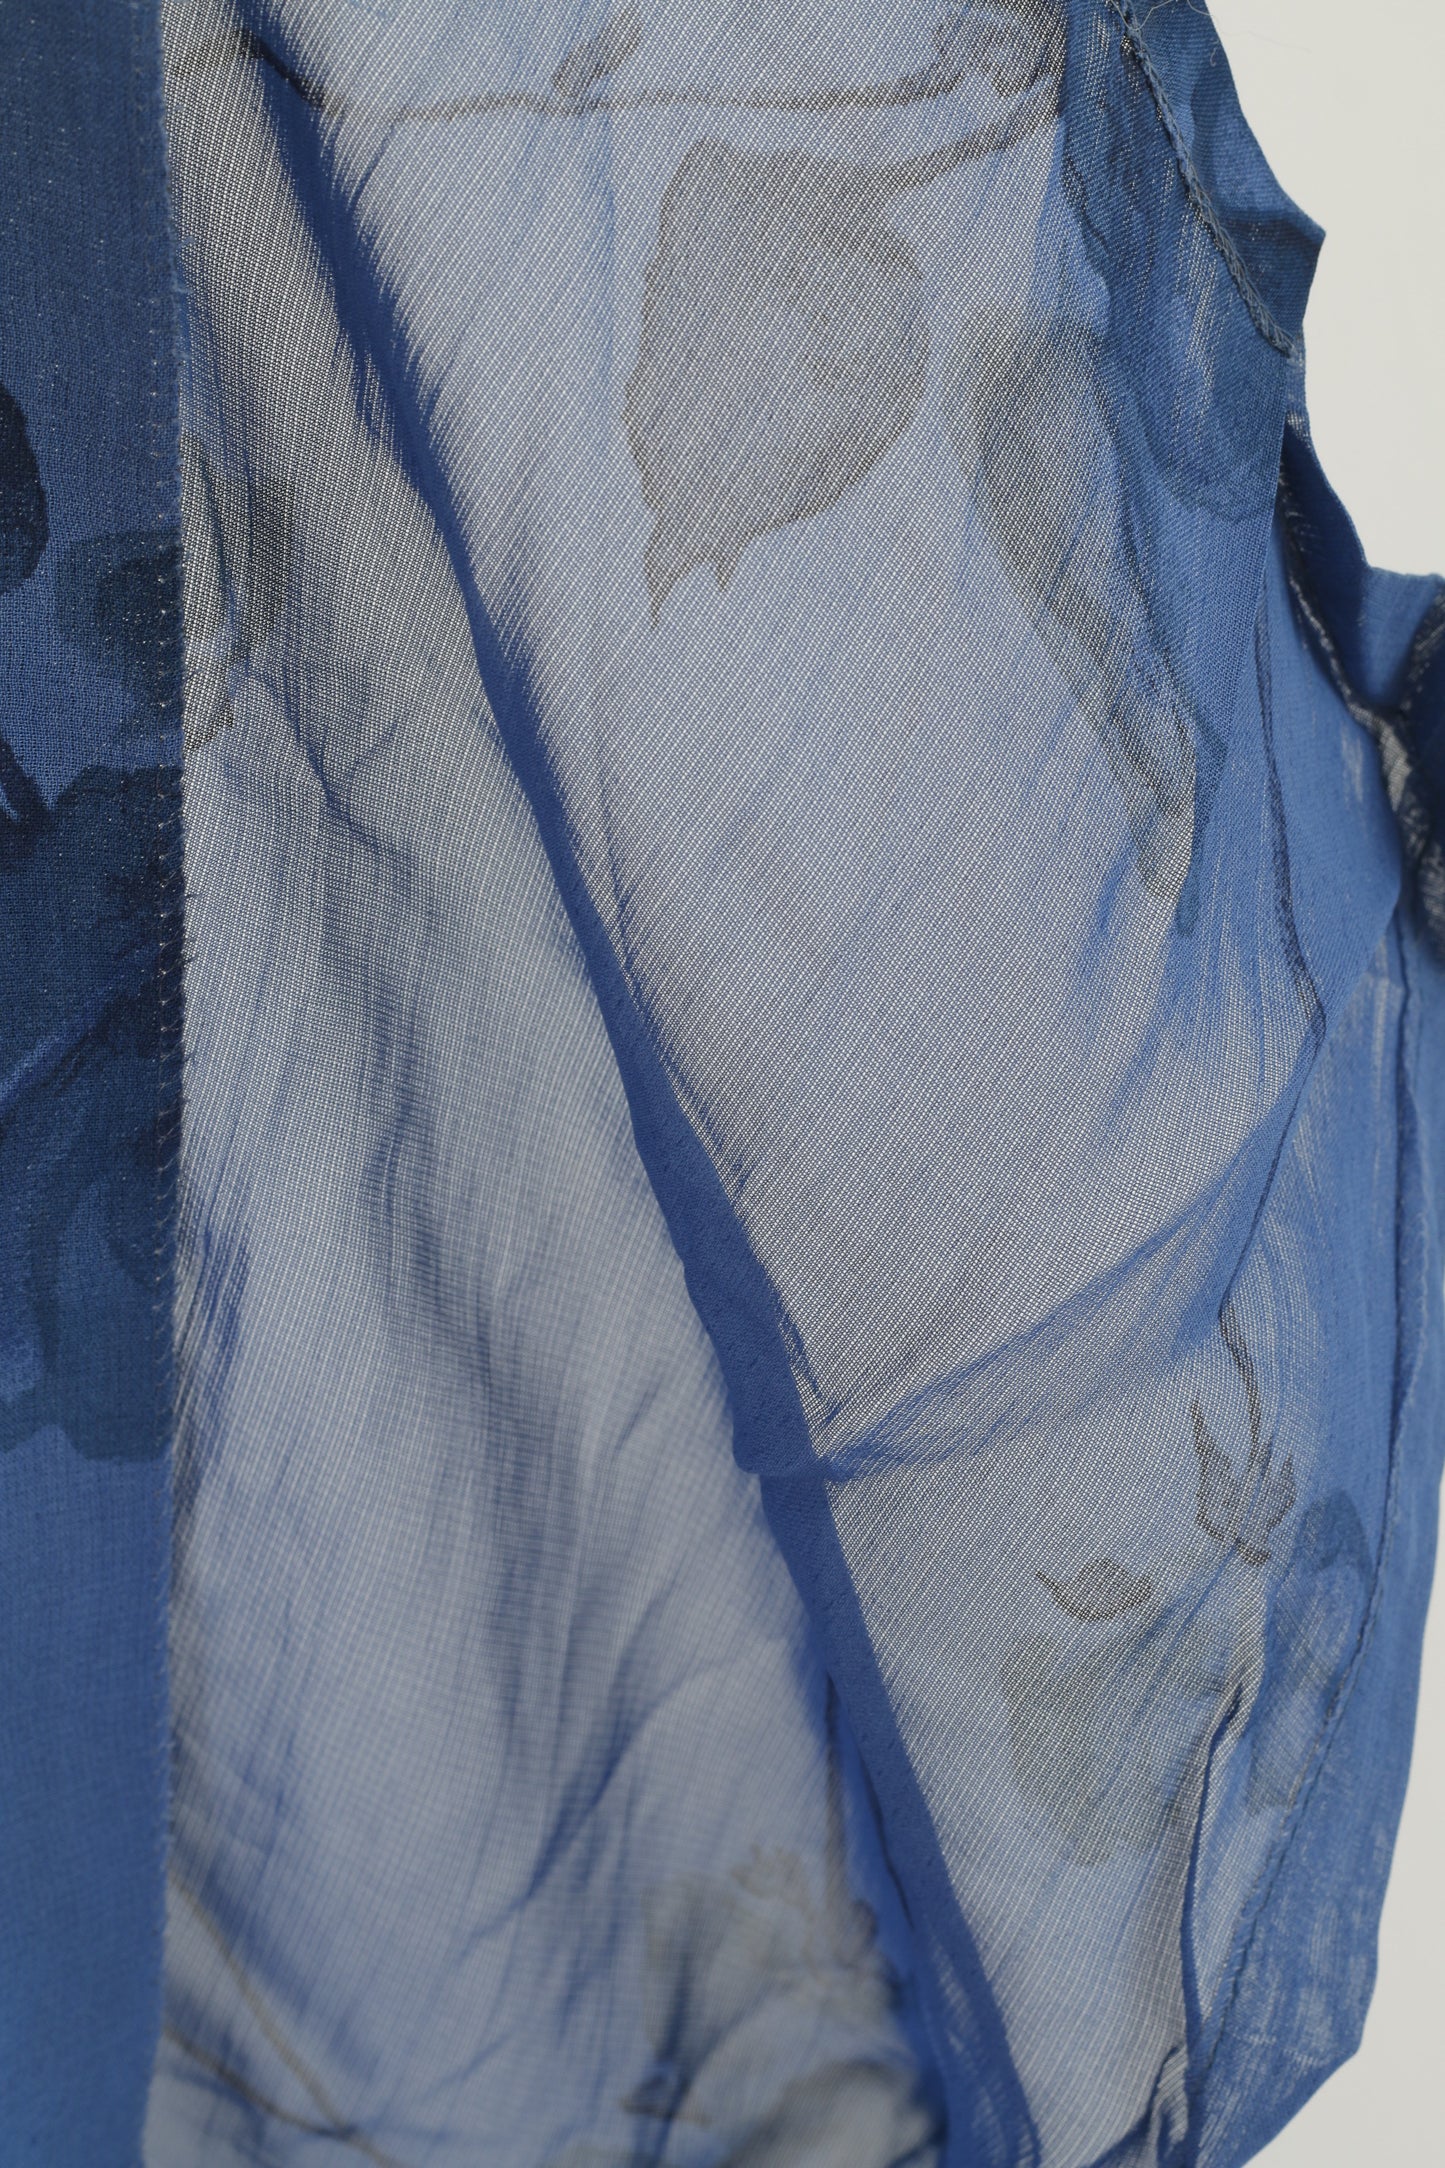 Thérèse Baumaire Femme 2 S Robe Bleu Transparent Vintage Boutonnée